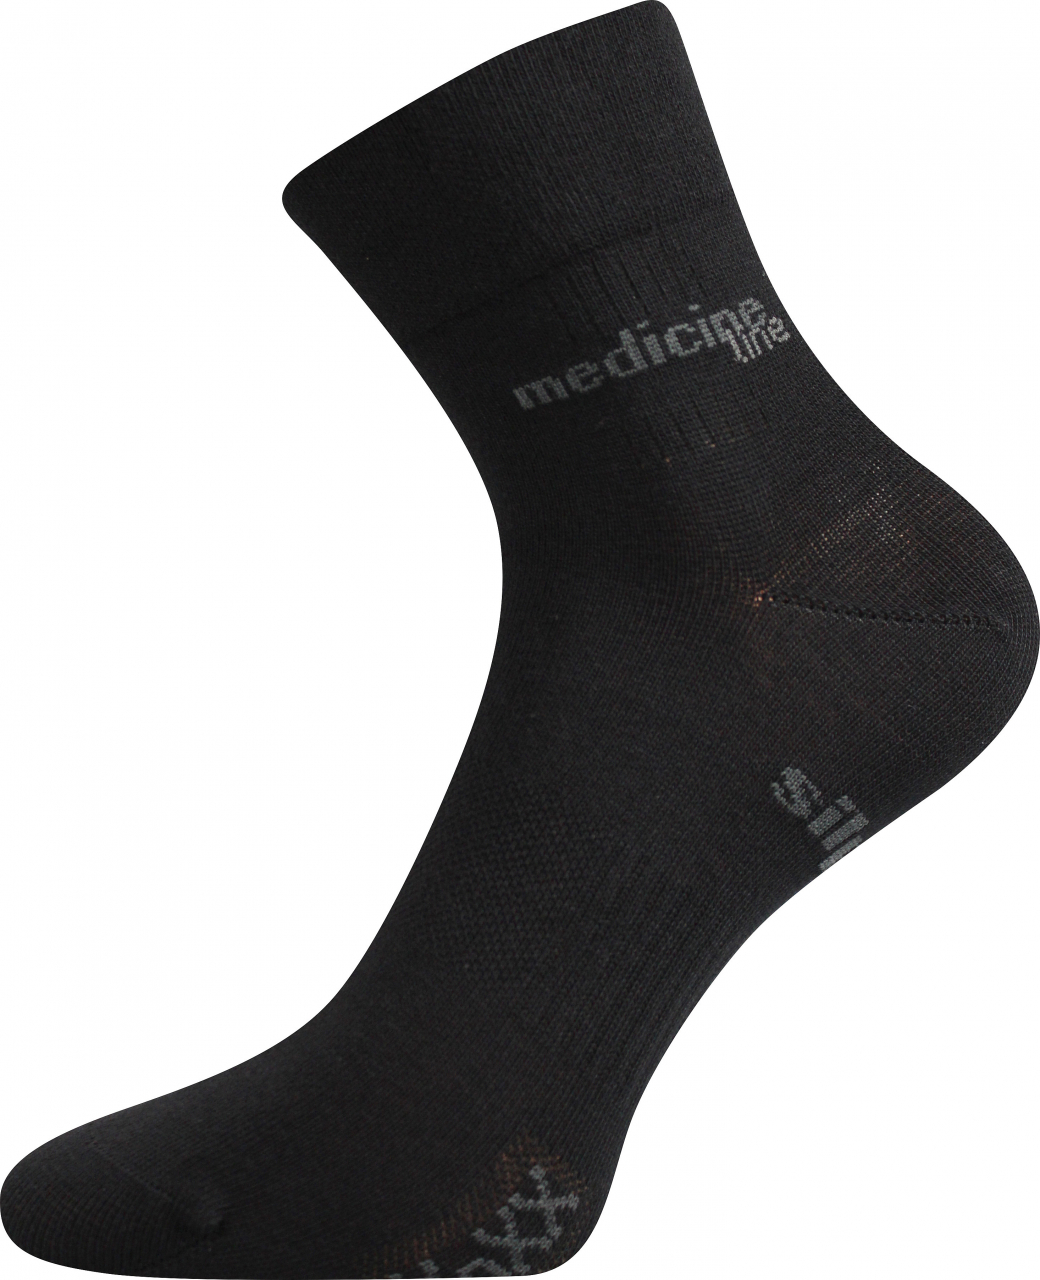 Ponožky zdravotní Mission Medicine - černé, 39-42